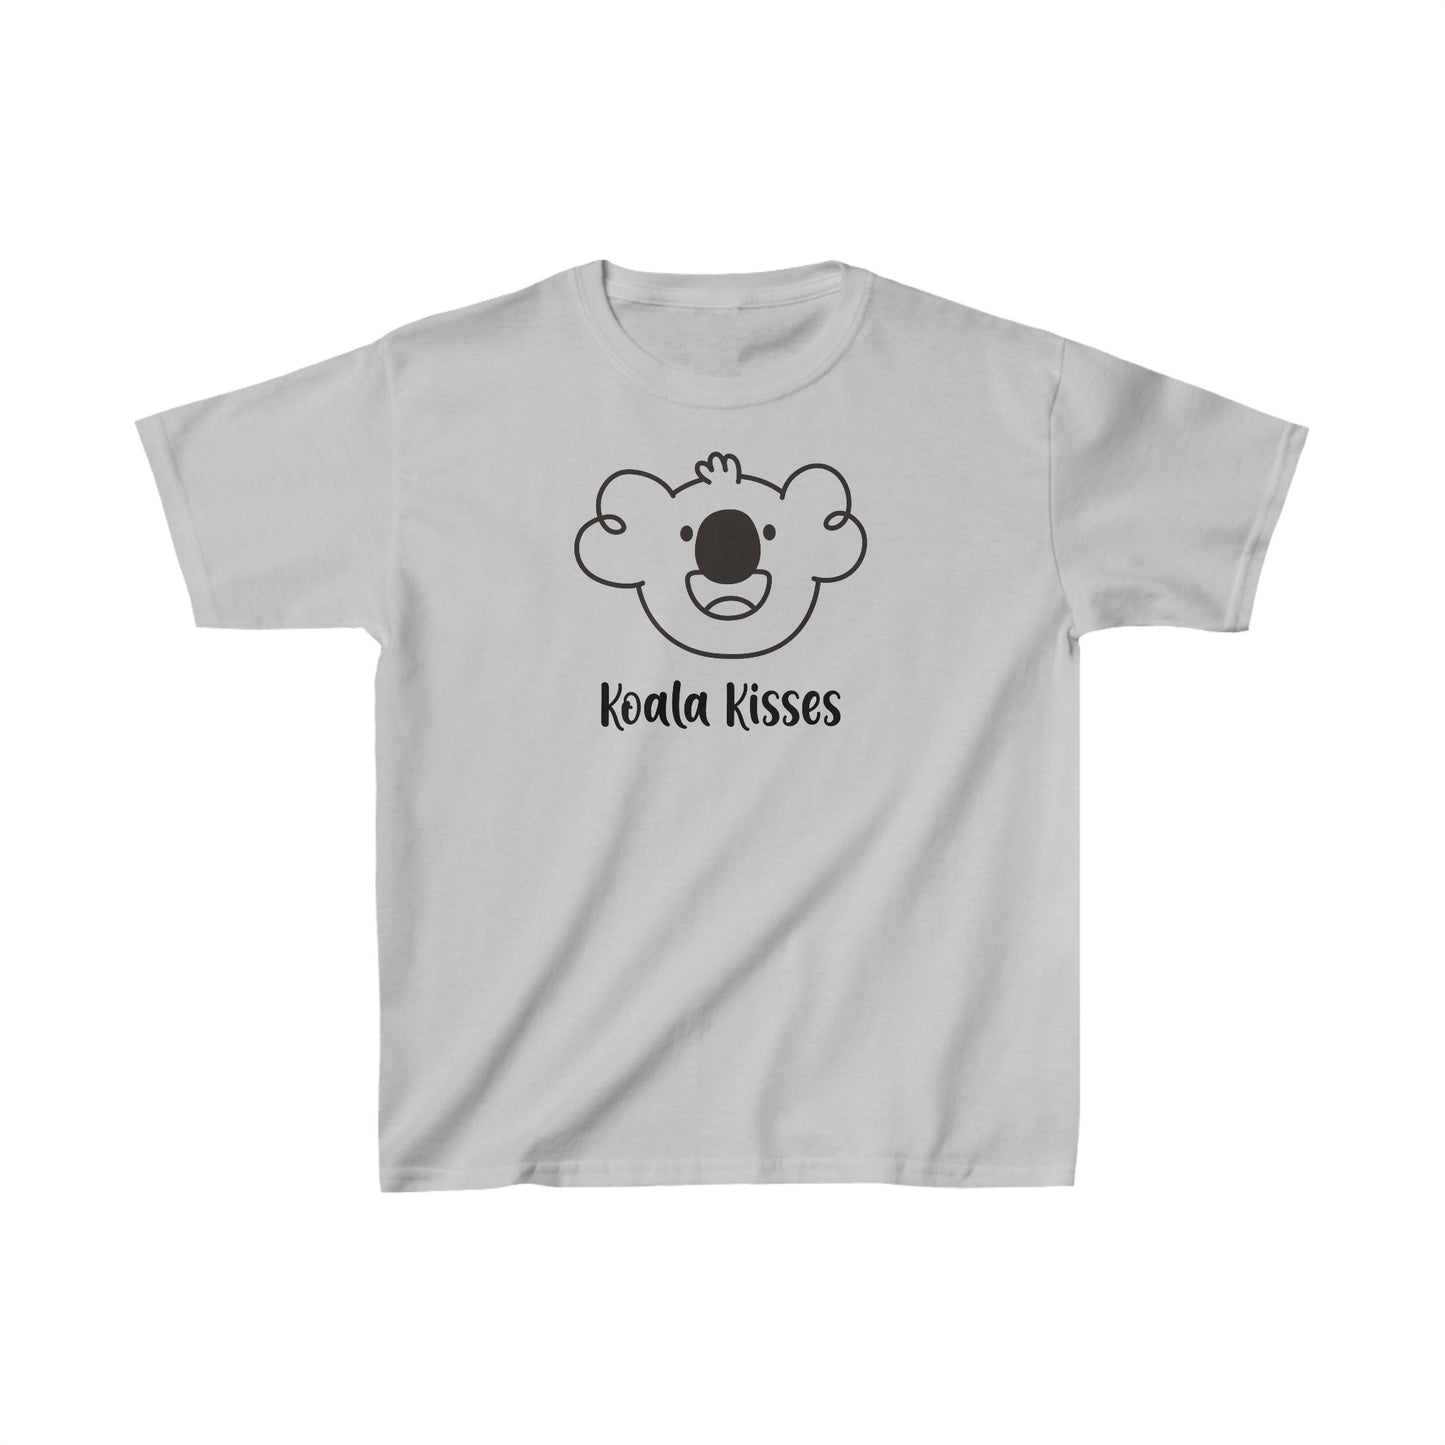 Tyler's Koala Kisses Kid's T-shirt - Bright Color